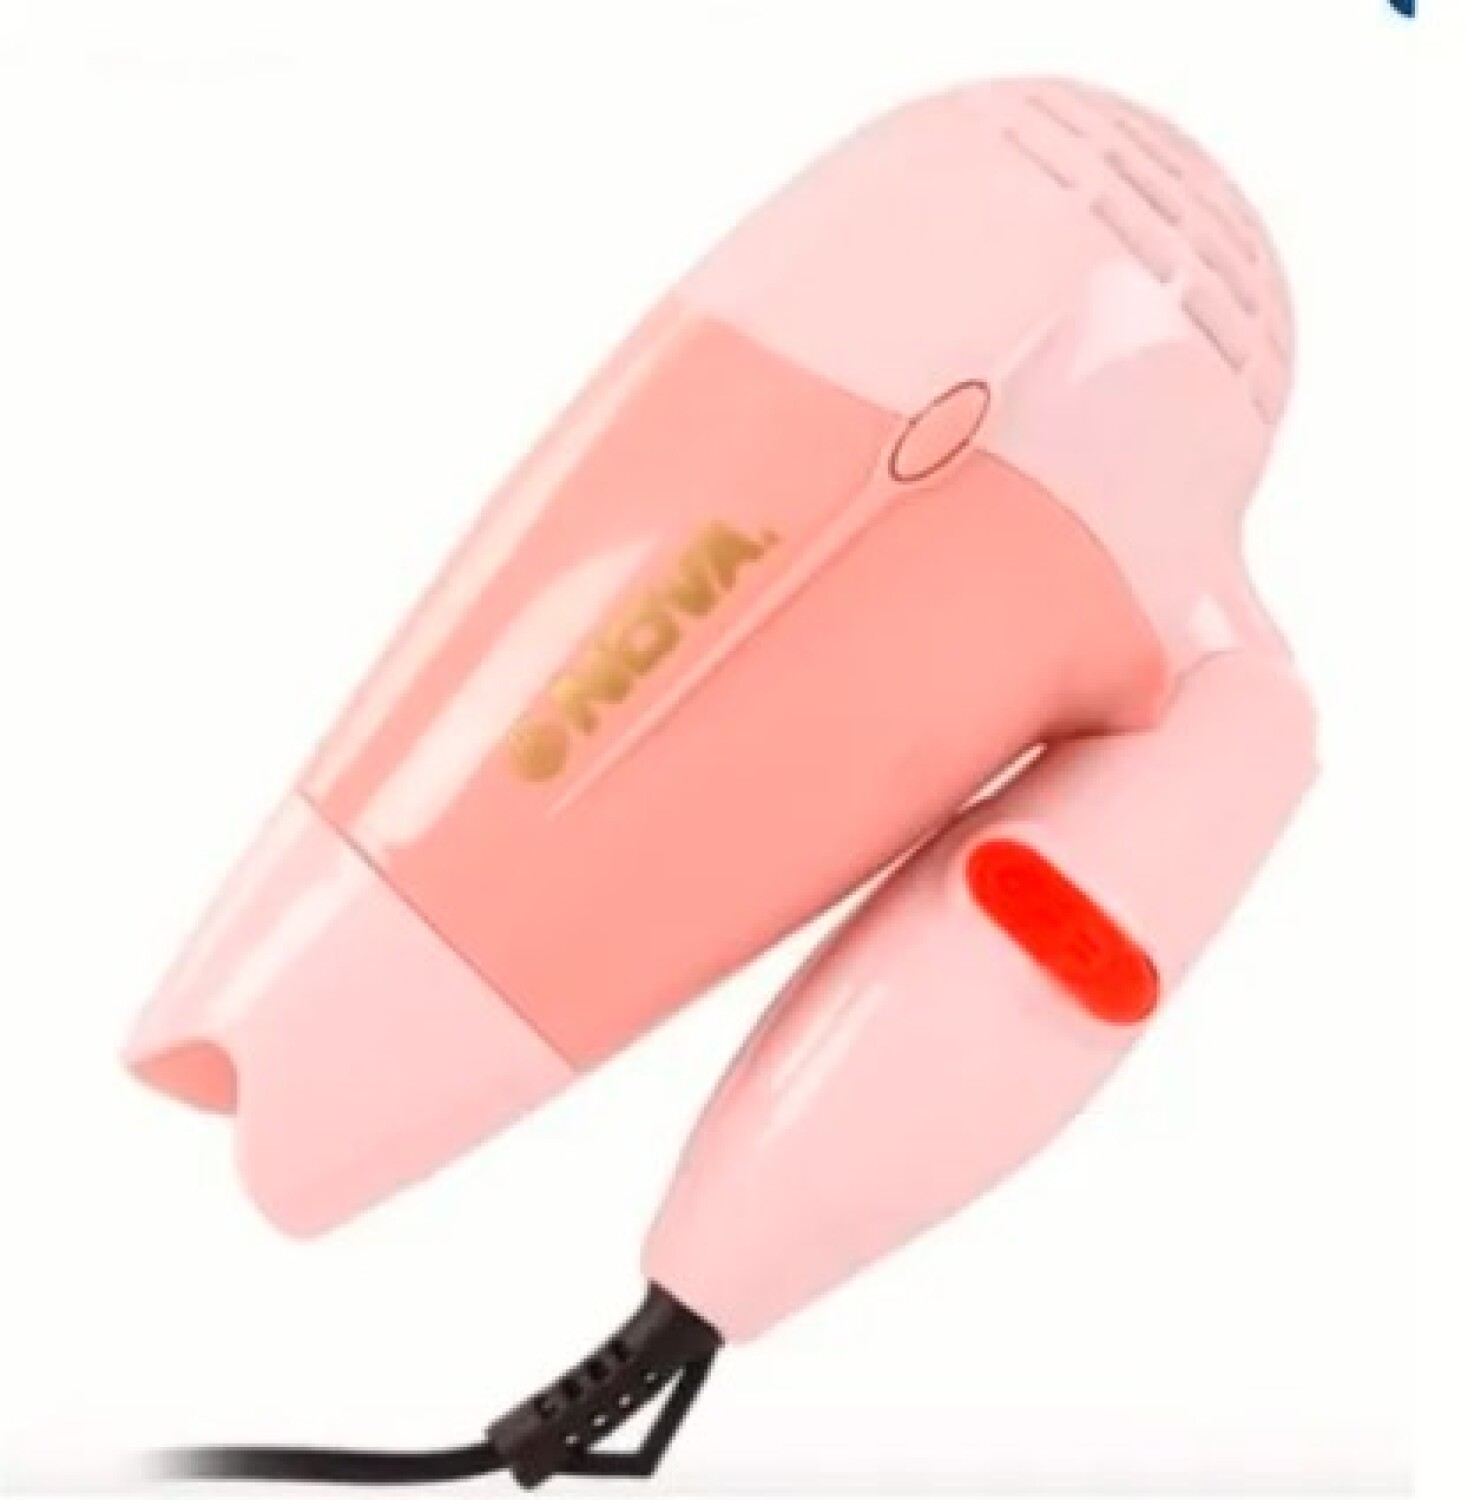 Novedades Marina 2 on Instagram: Secadora pequeña para cabello